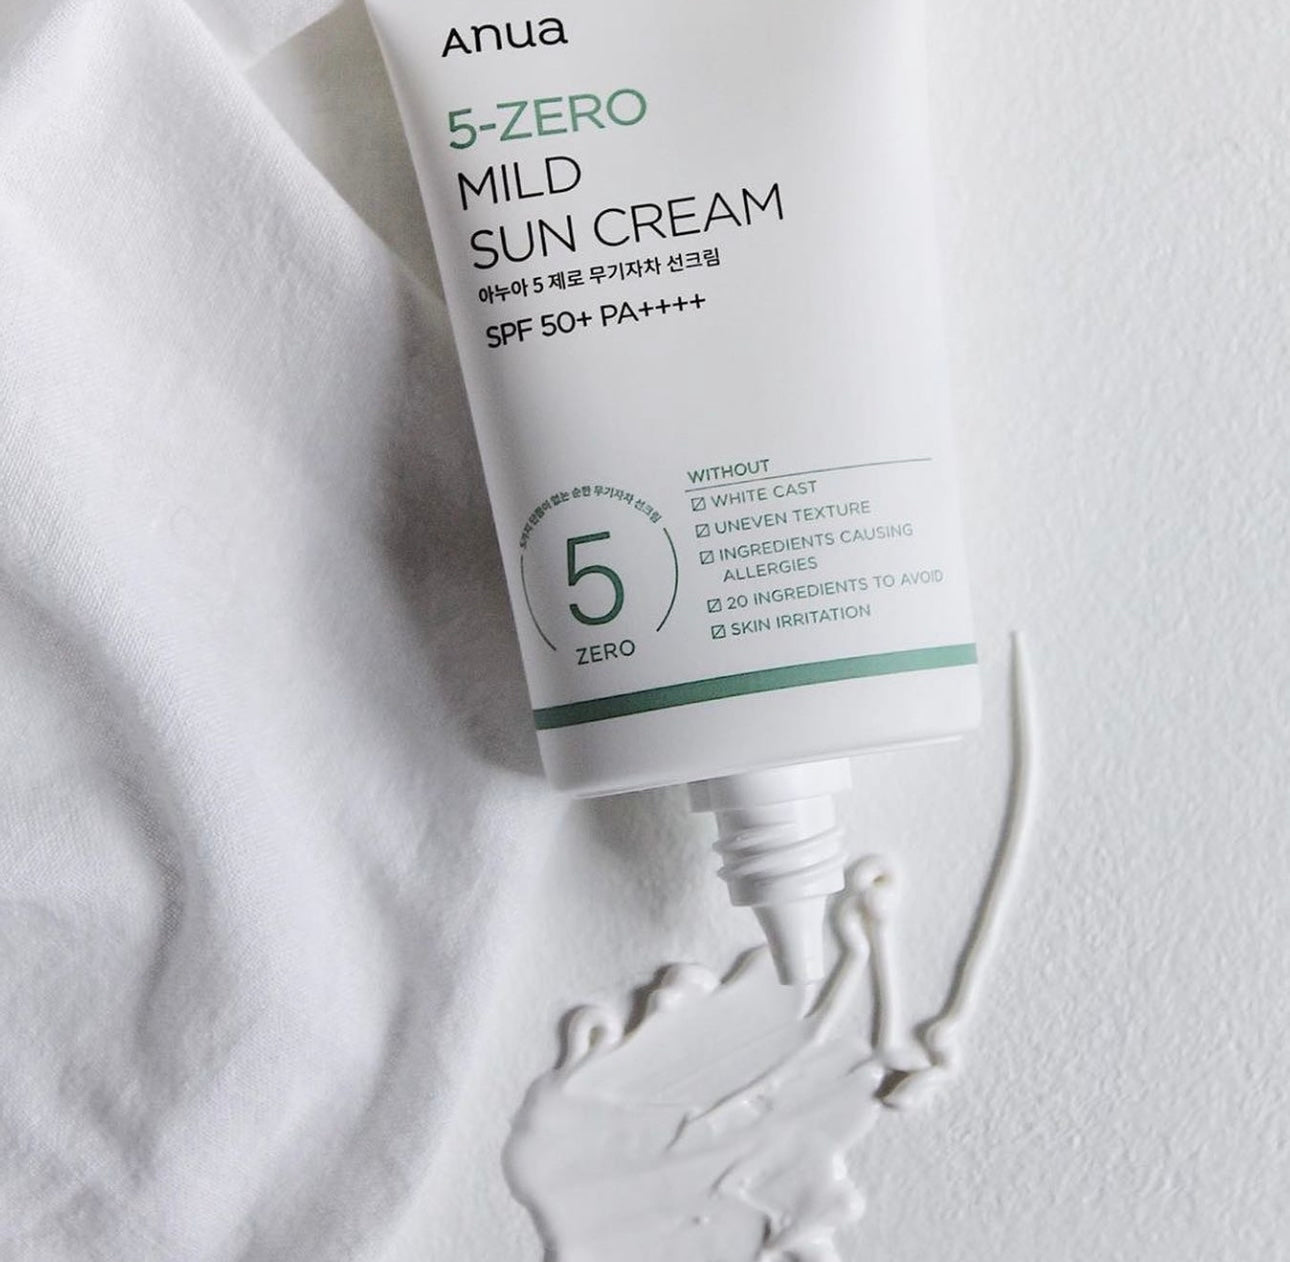 為敏感肌定制的安心防曬霜⛱️| ANUA 5-Zero Mild Suncream 藥草提亮零感物理防曬 SPF50+ PA++++